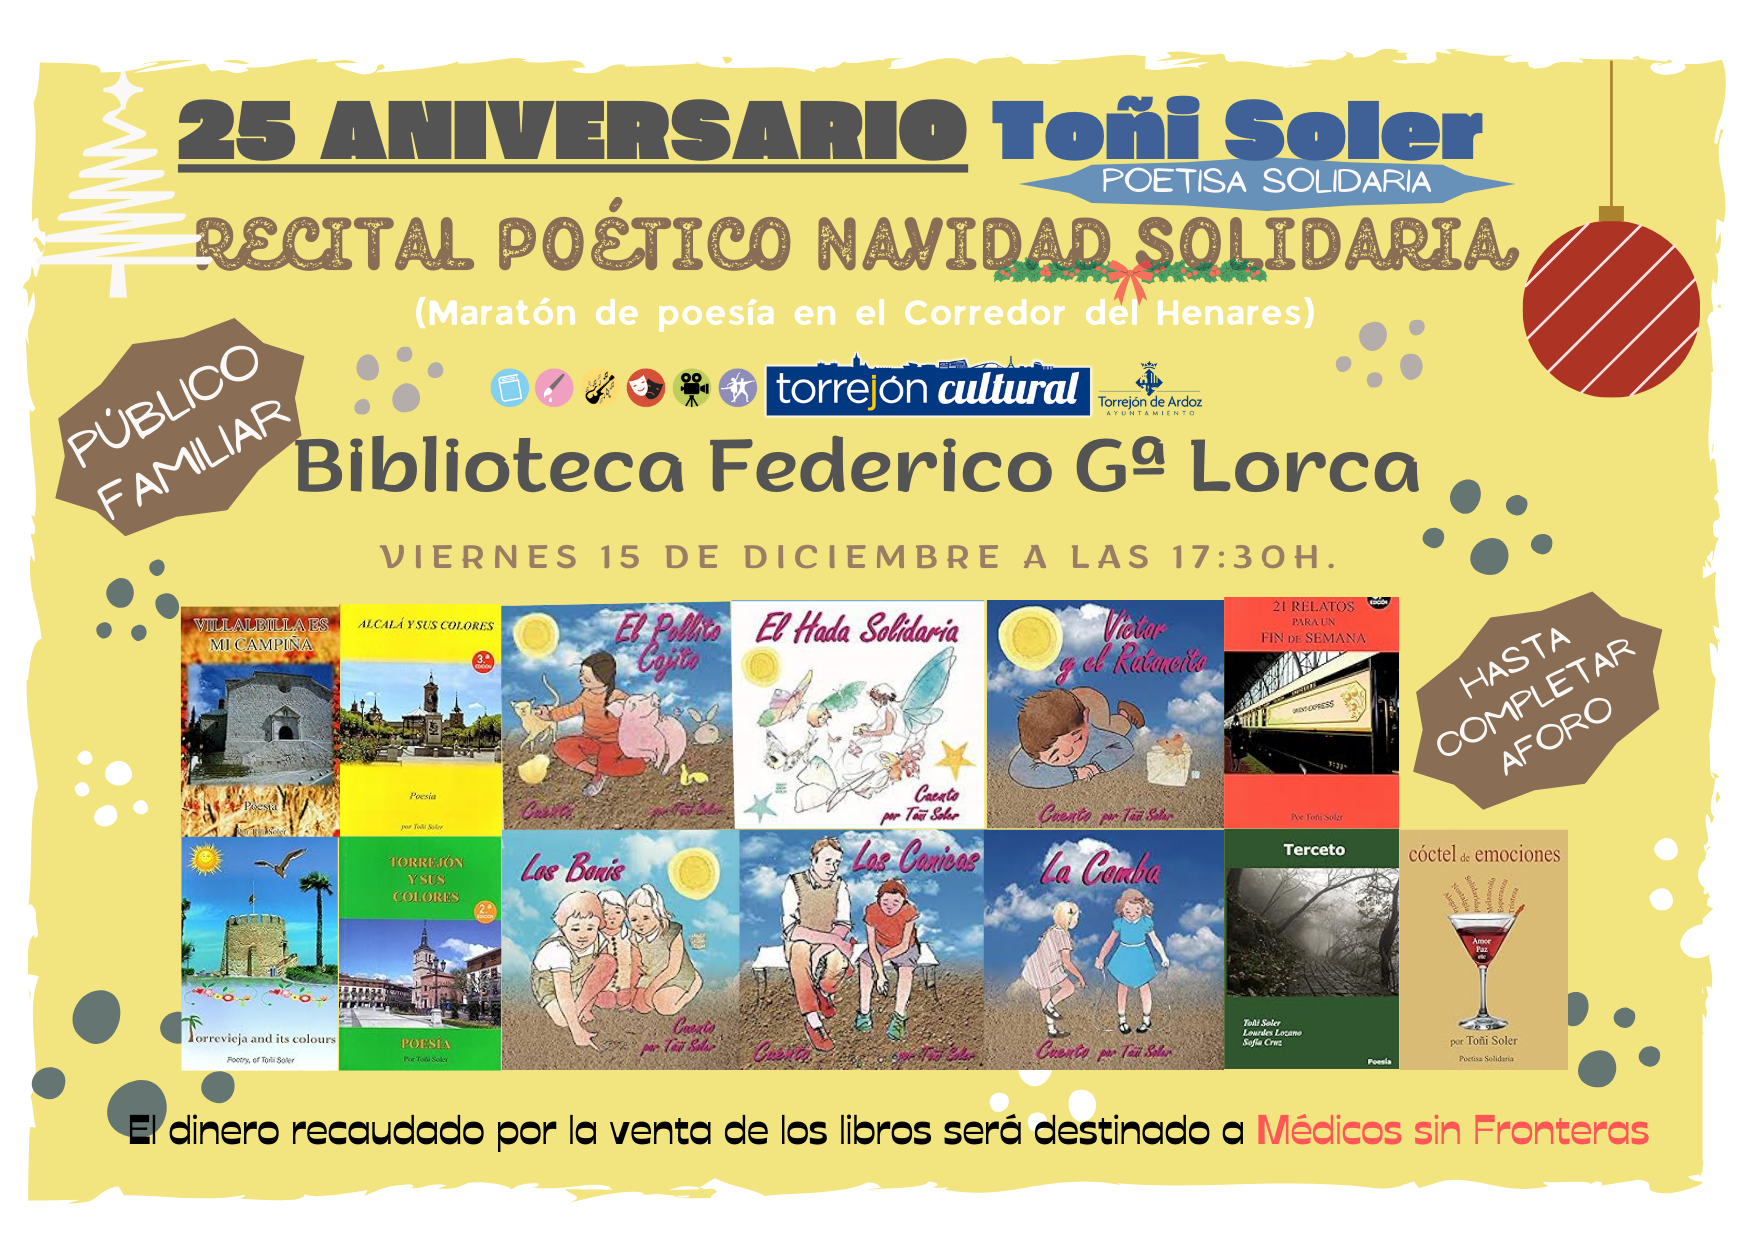 Recital poético de Toñi Soler